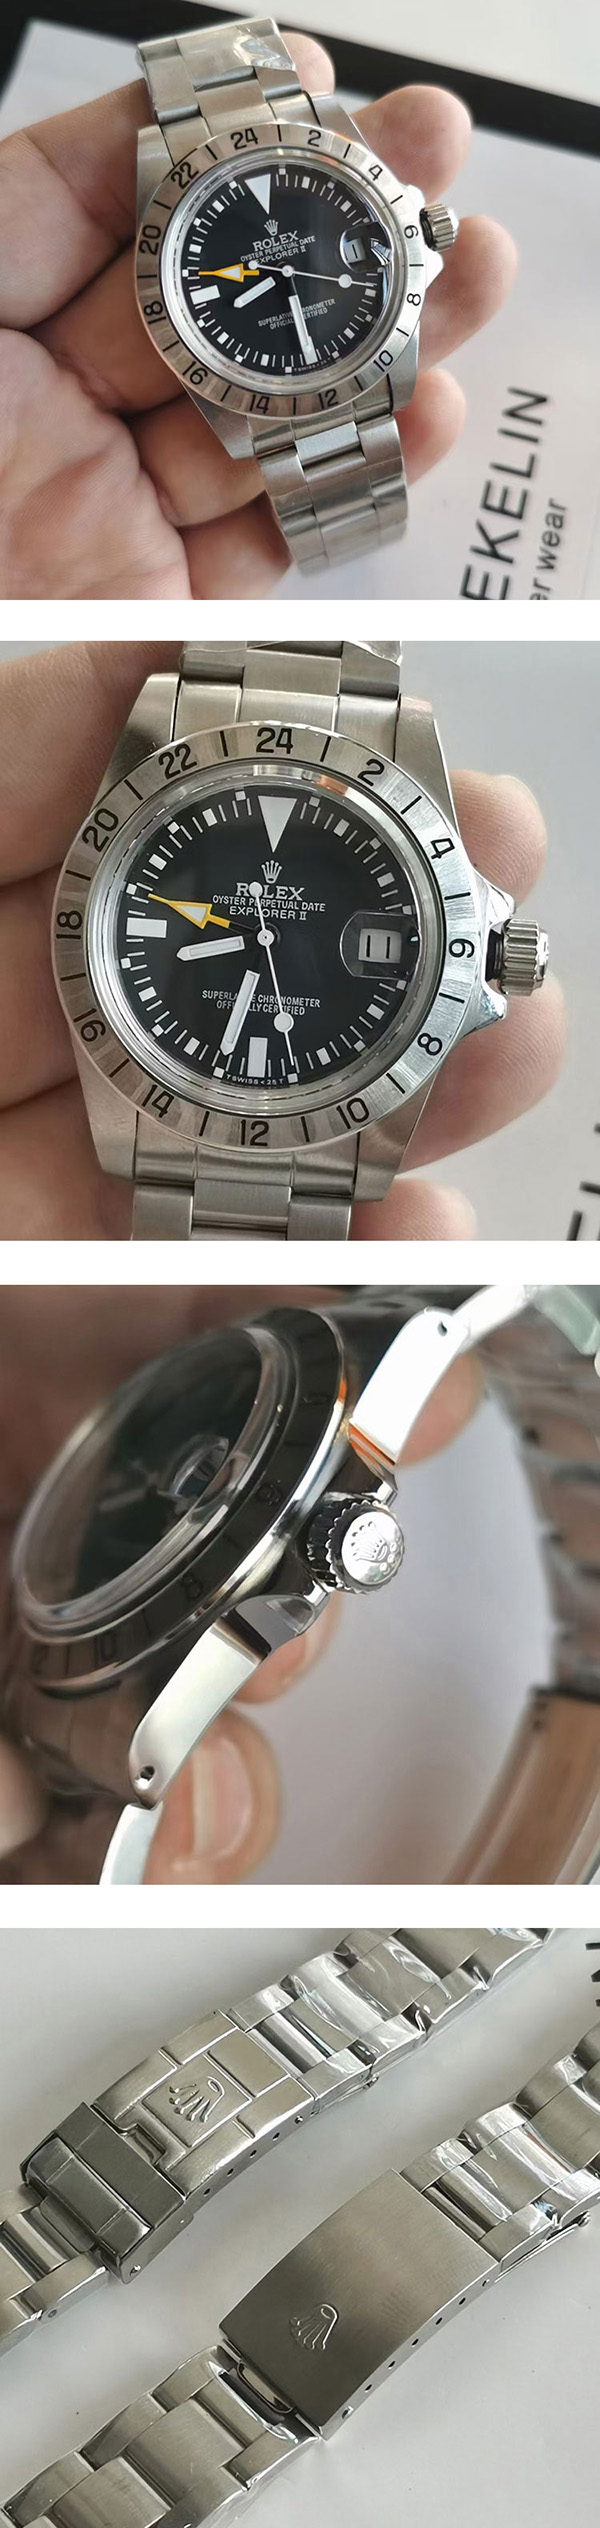 【大好評店舗】ロレックスエクスプローラーコピー時計1655、ビジネスシーン適用時計